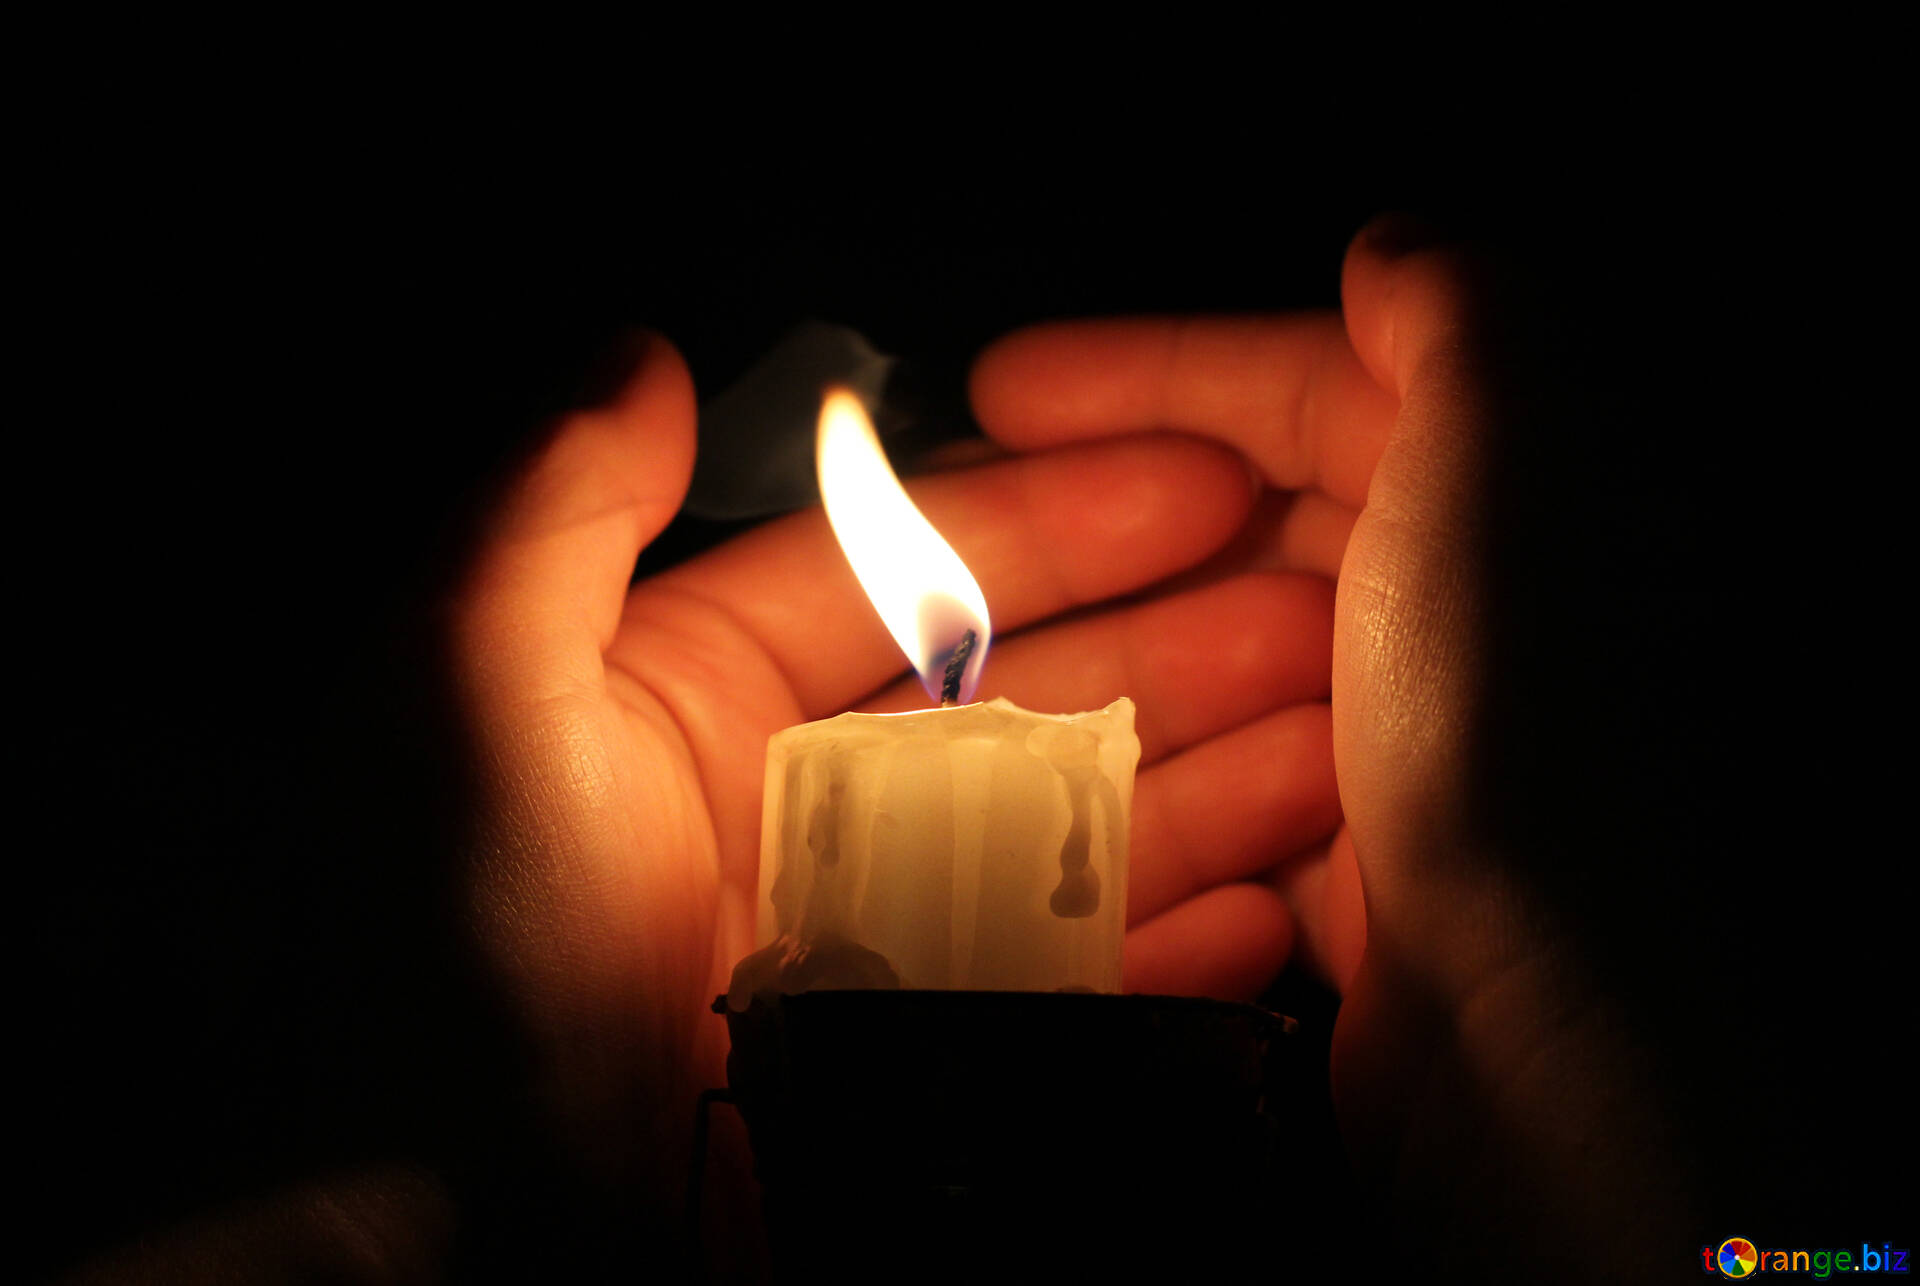 Стучит свеча. Зажженная свеча. Свеча в руках. Горящие свечи. Изображение свечи.